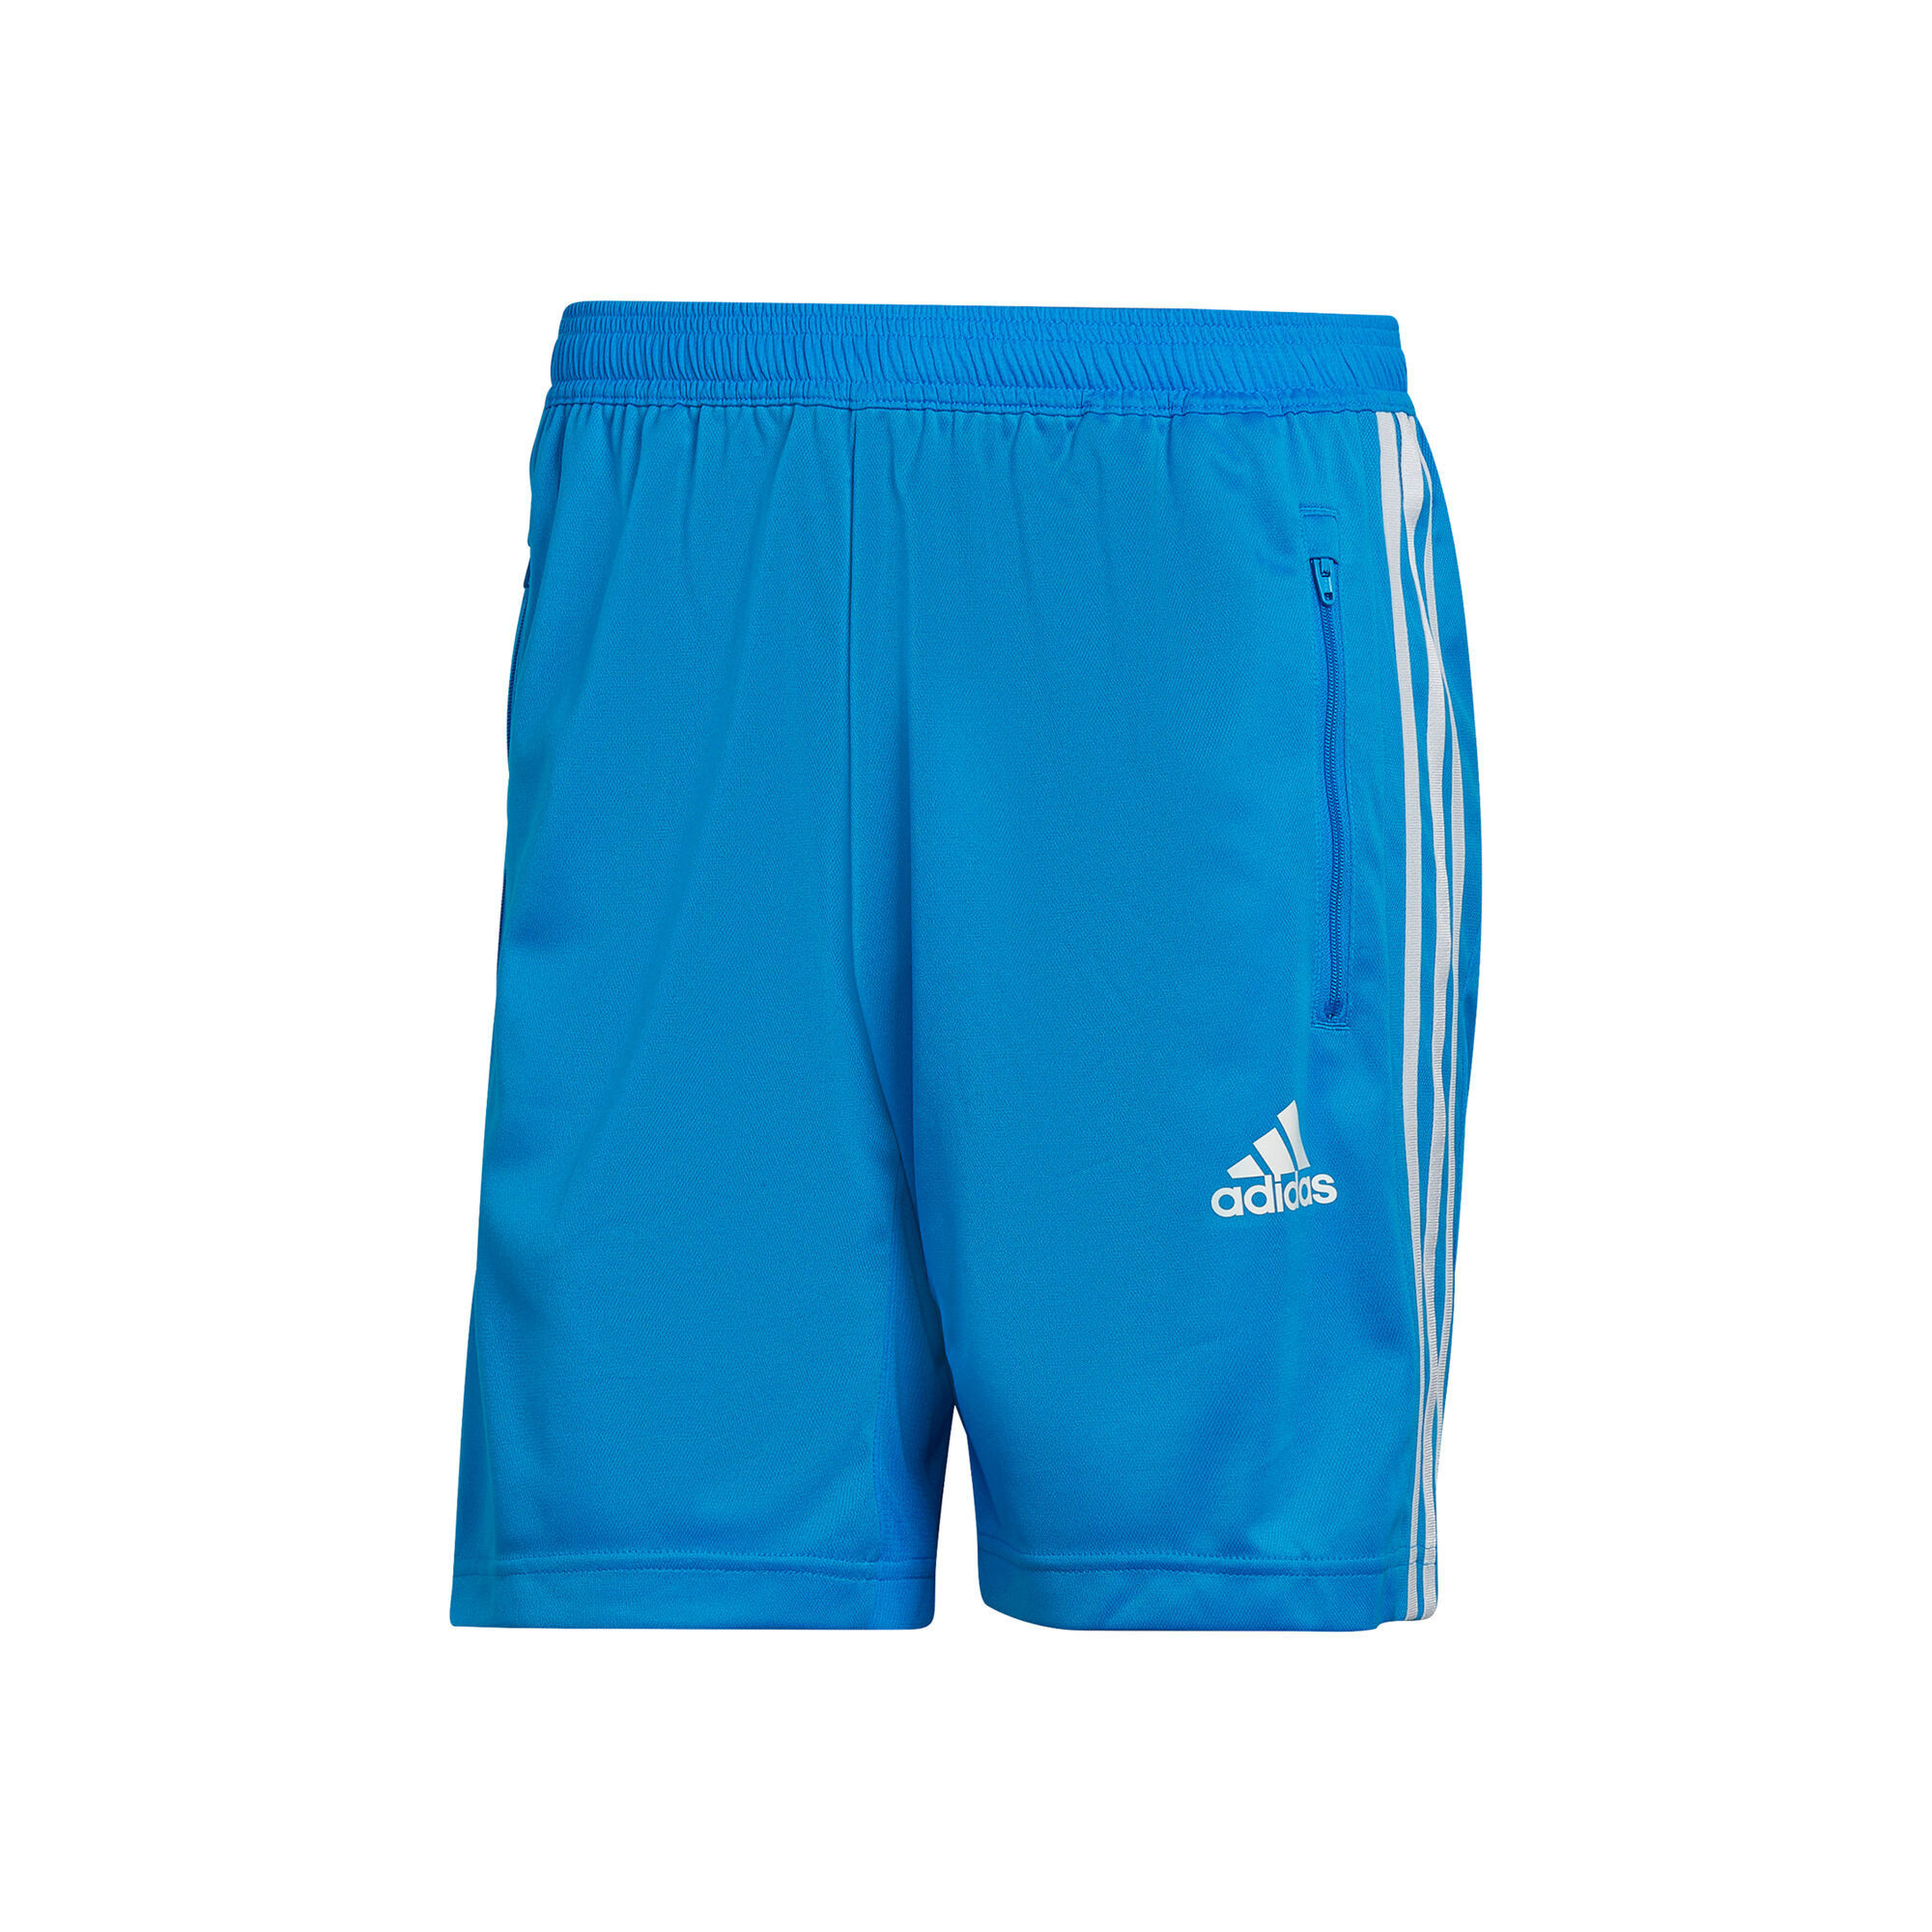 adidas 3 Stripes Shorts Herren - Blau, Weiß online kaufen | Tennis-Point